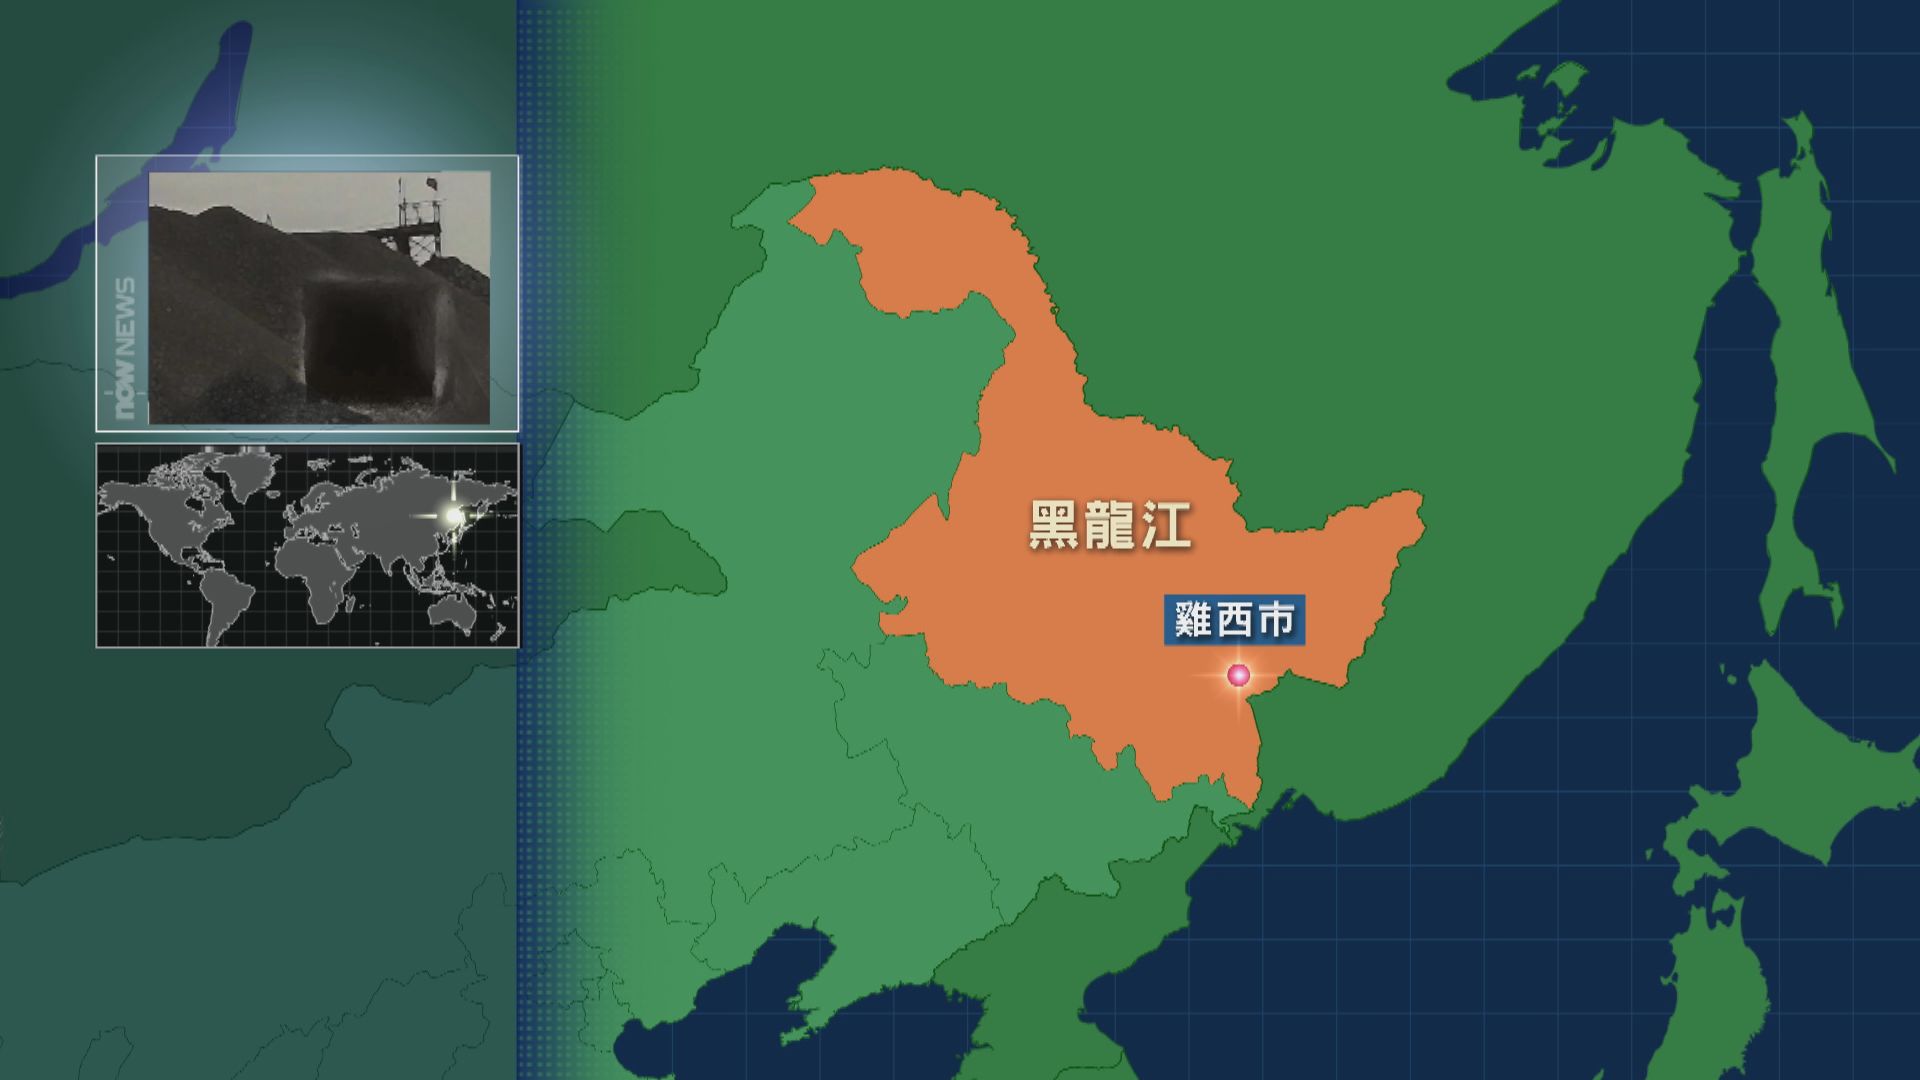 黑龍江有煤礦發生事故 釀12死13傷